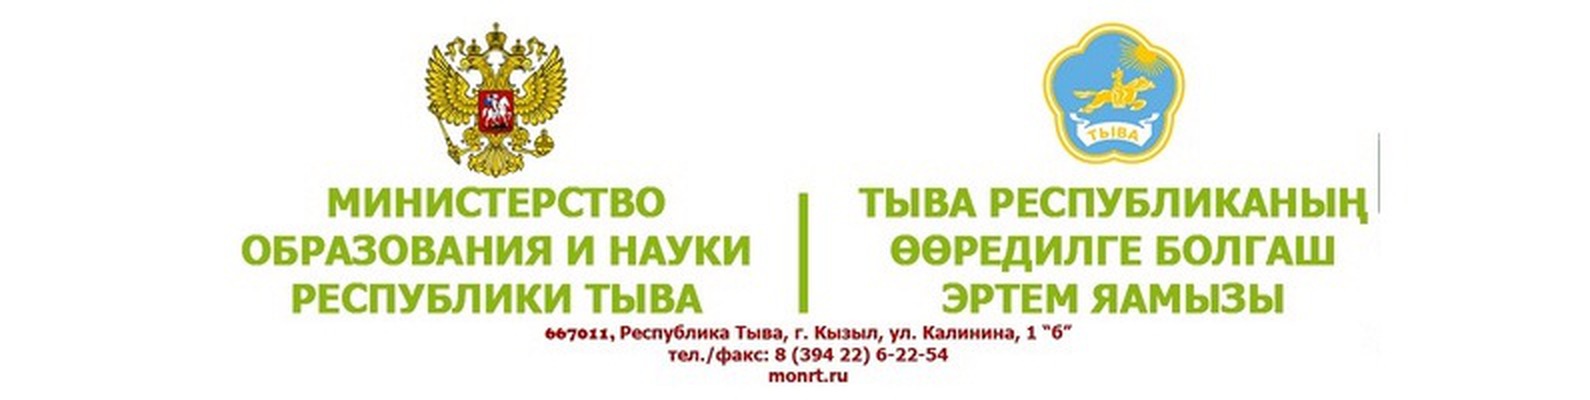 Министерство образования и науки Республики Тыва